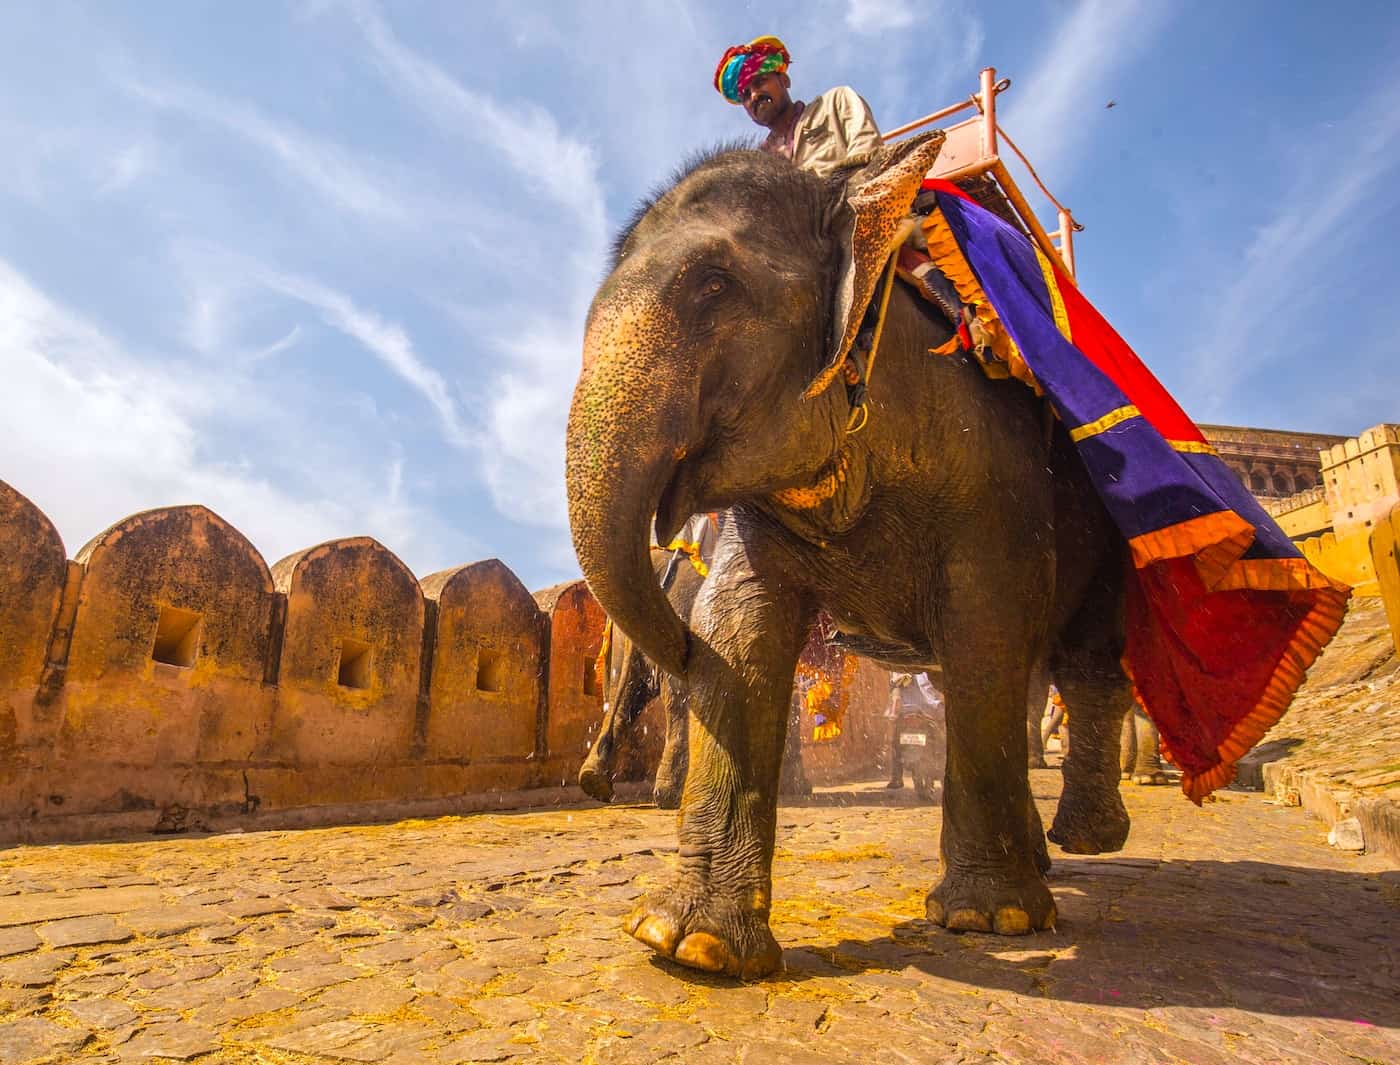 https://www.crowdfundinsider.com/wp-content/uploads/2019/09/Elephant-Amber-Palace-Jaipur-India-rayban-unsplash.jpg